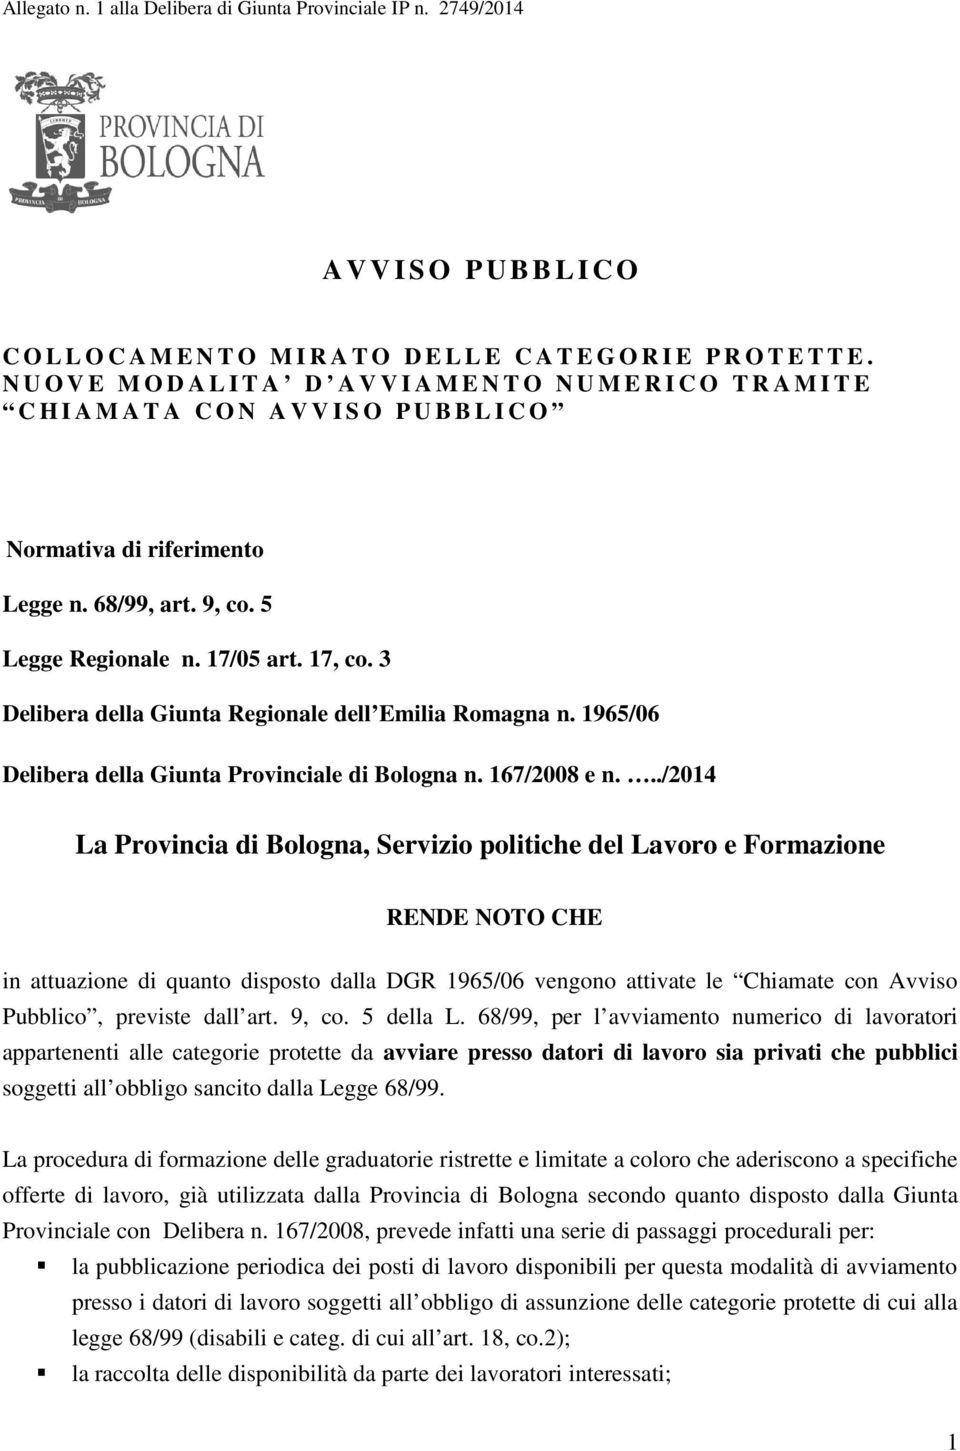 5 Legge Regionale n. 17/05 art. 17, co. 3 Delibera della Giunta Regionale dell Emilia Romagna n. 1965/06 Delibera della Giunta Provinciale di Bologna n. 167/2008 e n.